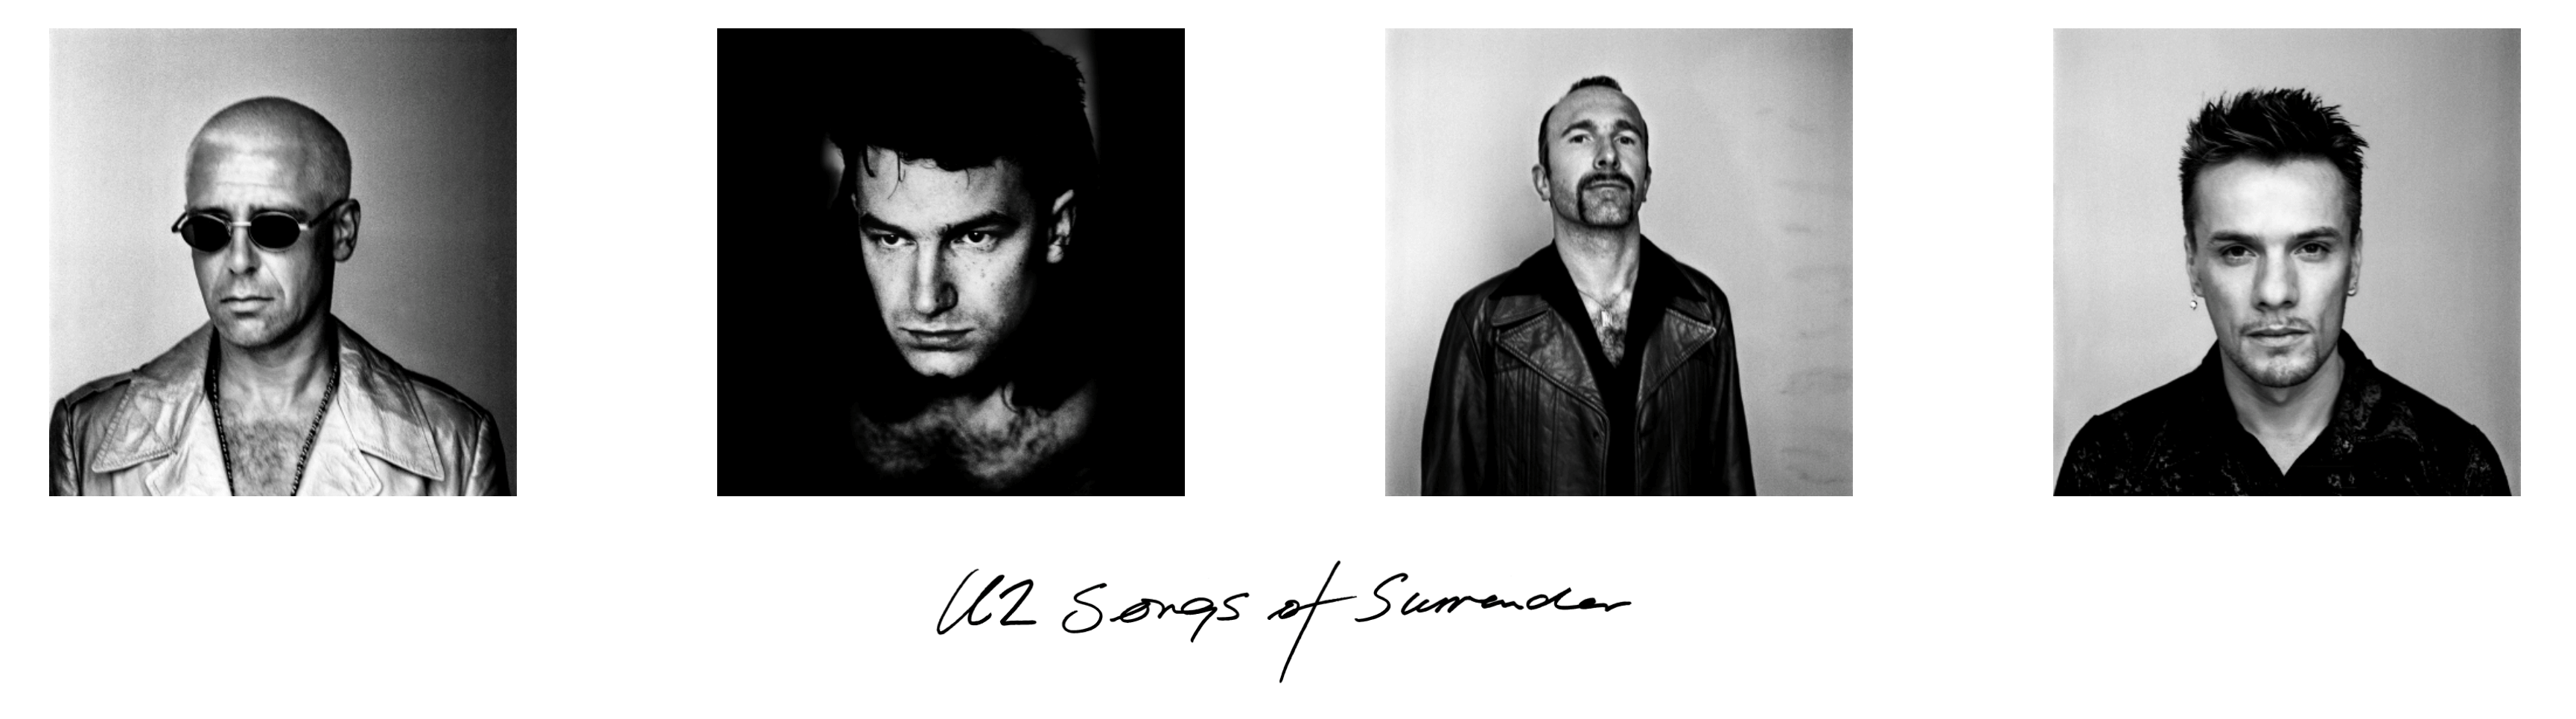 U2 Songs Of Surrender